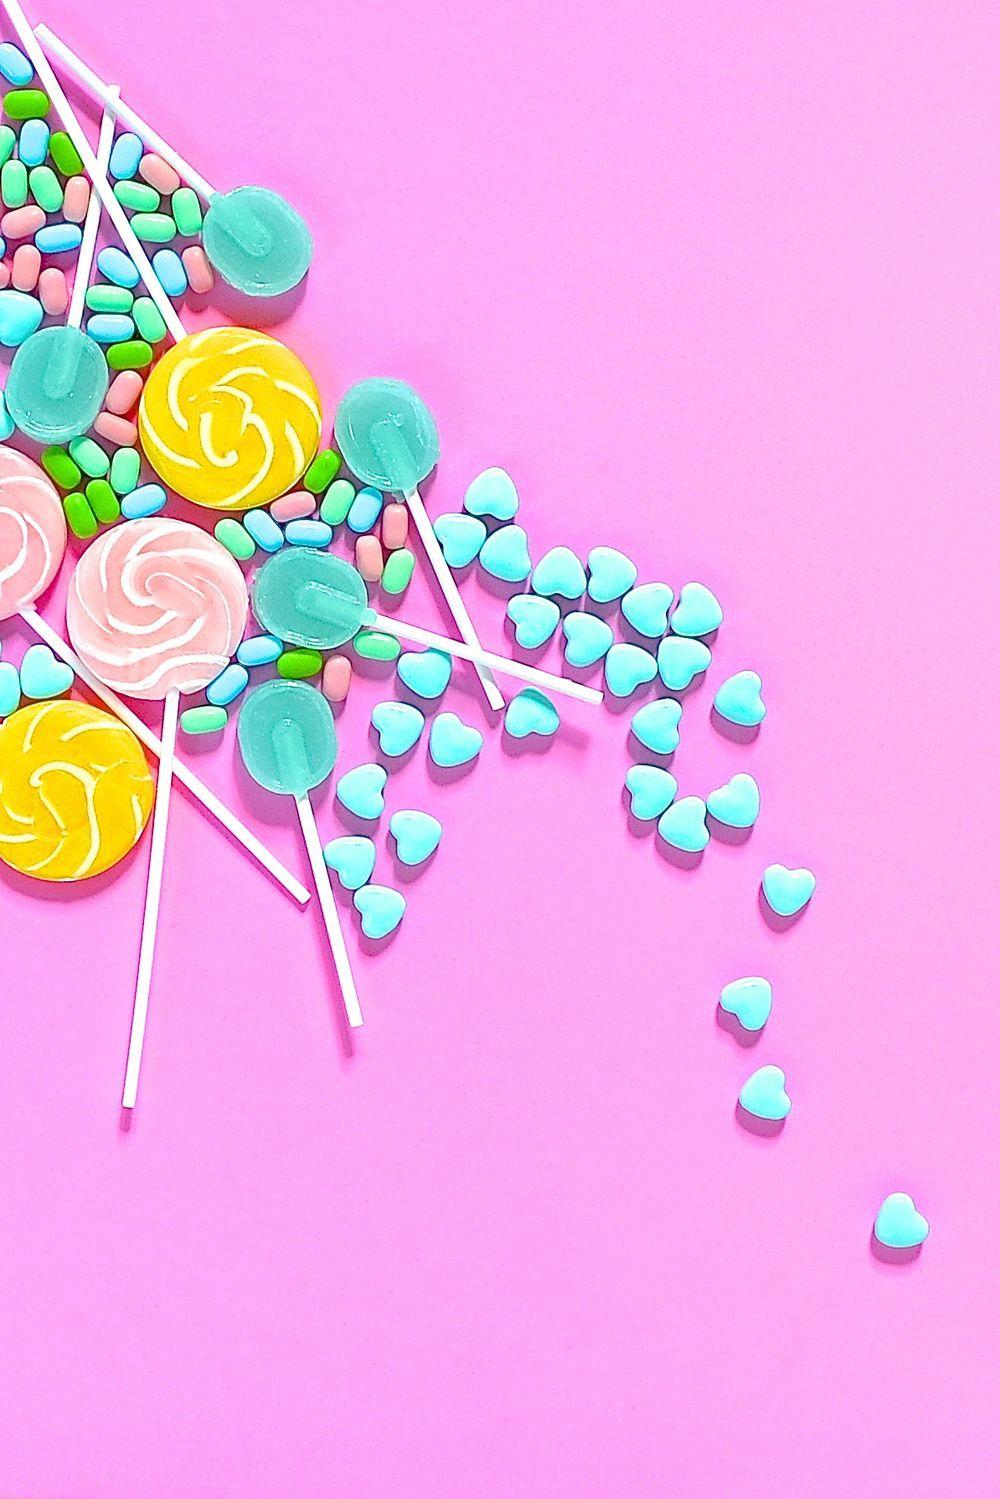 Sweet As Sugar- Wallpaper Download. Tinder, Wallpaper downloads